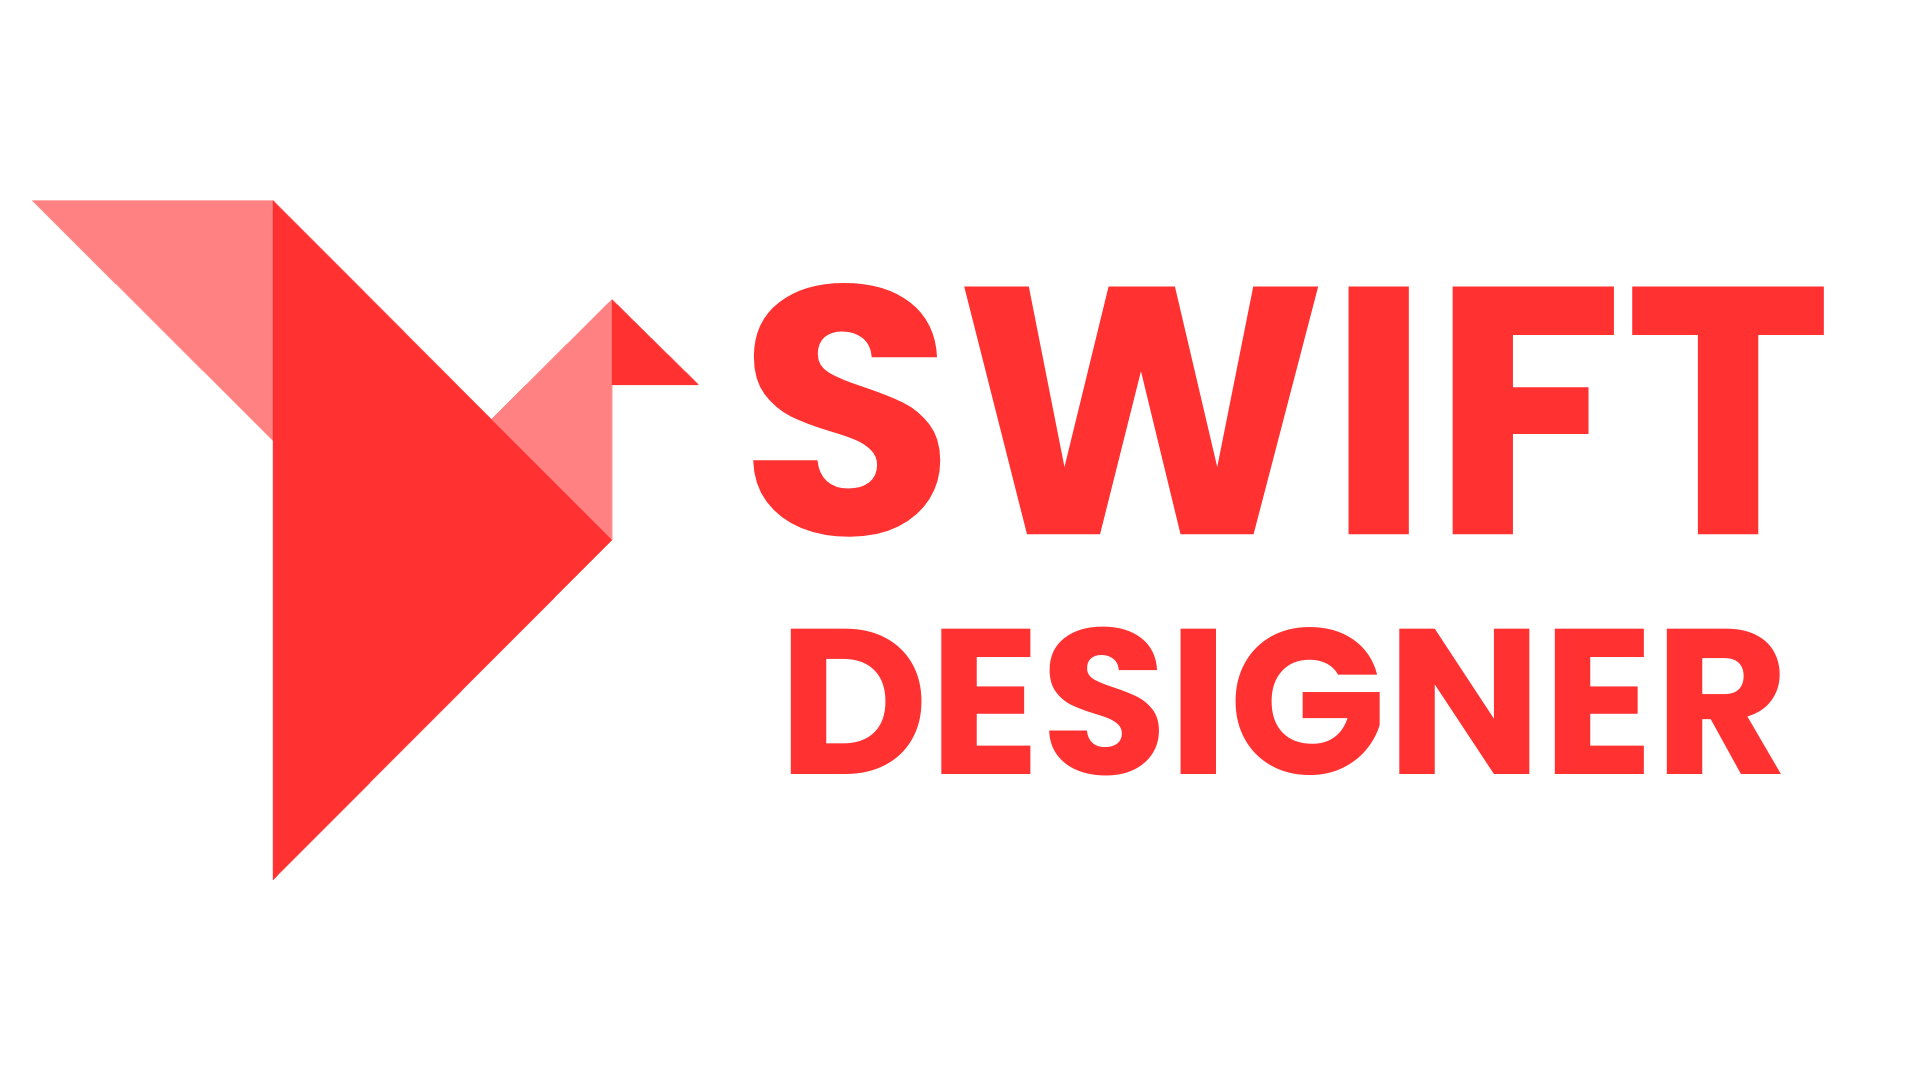 SWIFT DESIGNER